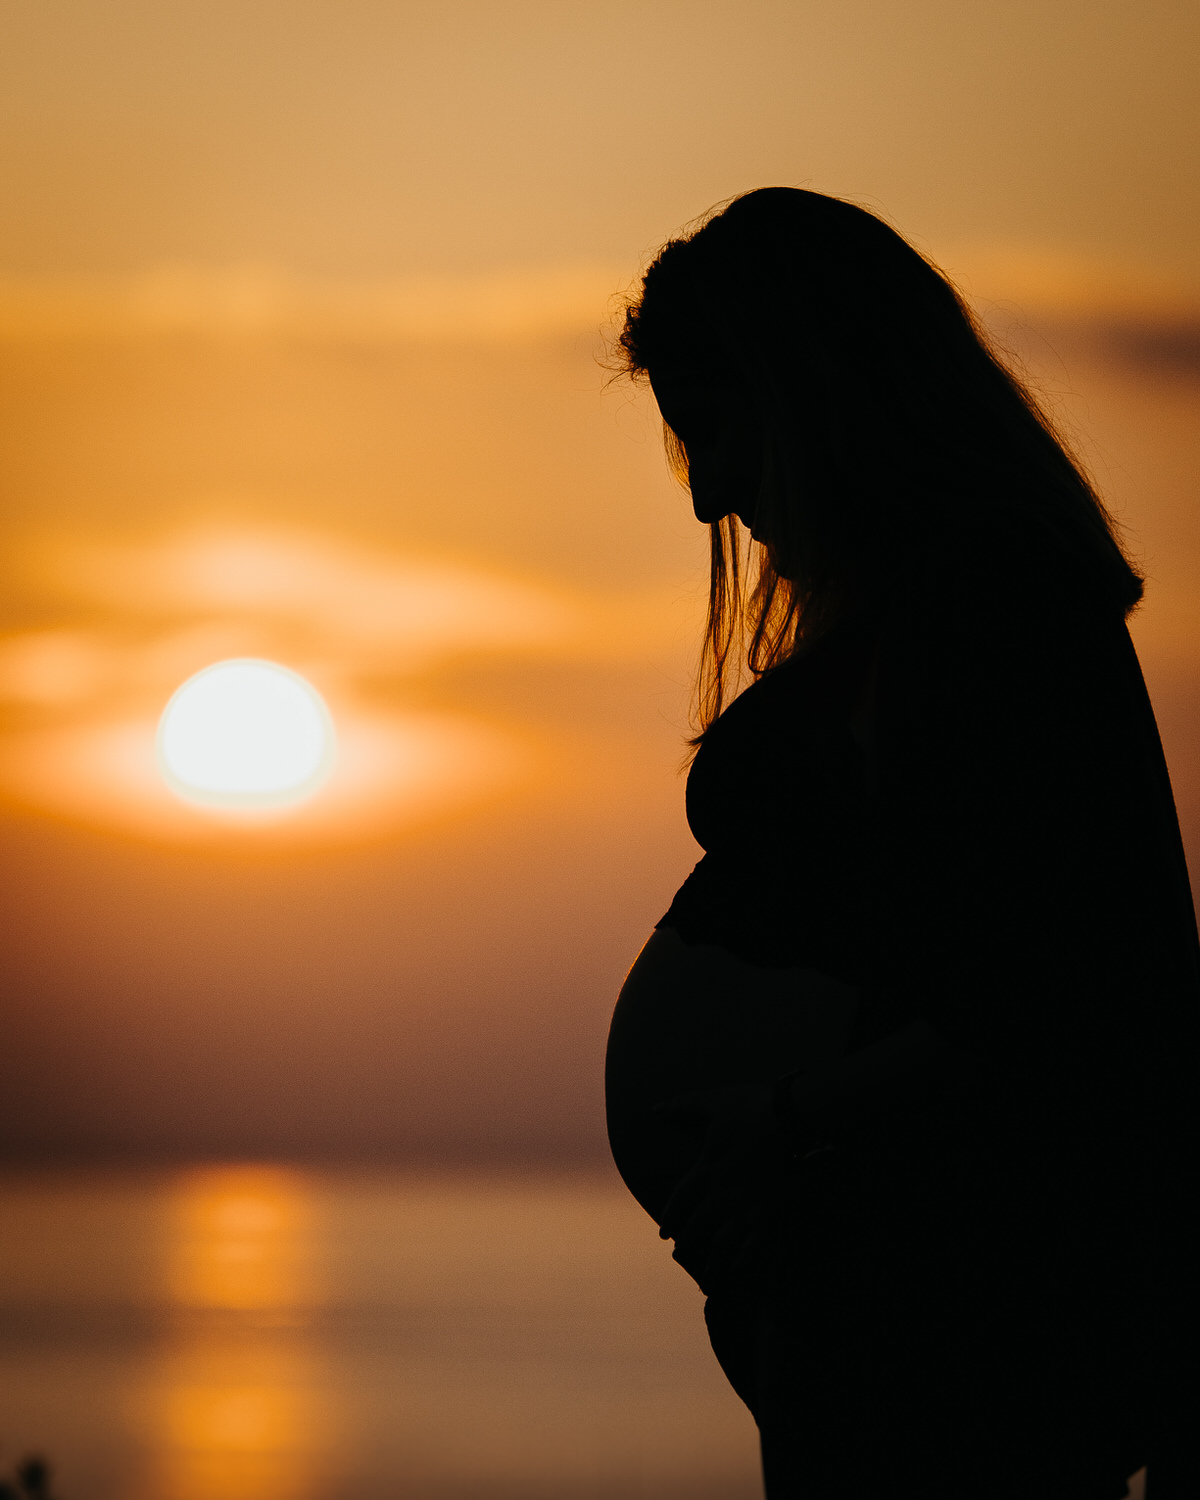 Silueta de mujer embarazada en contraluz, de pie frente a un fondo anaranjado de atardecer.

